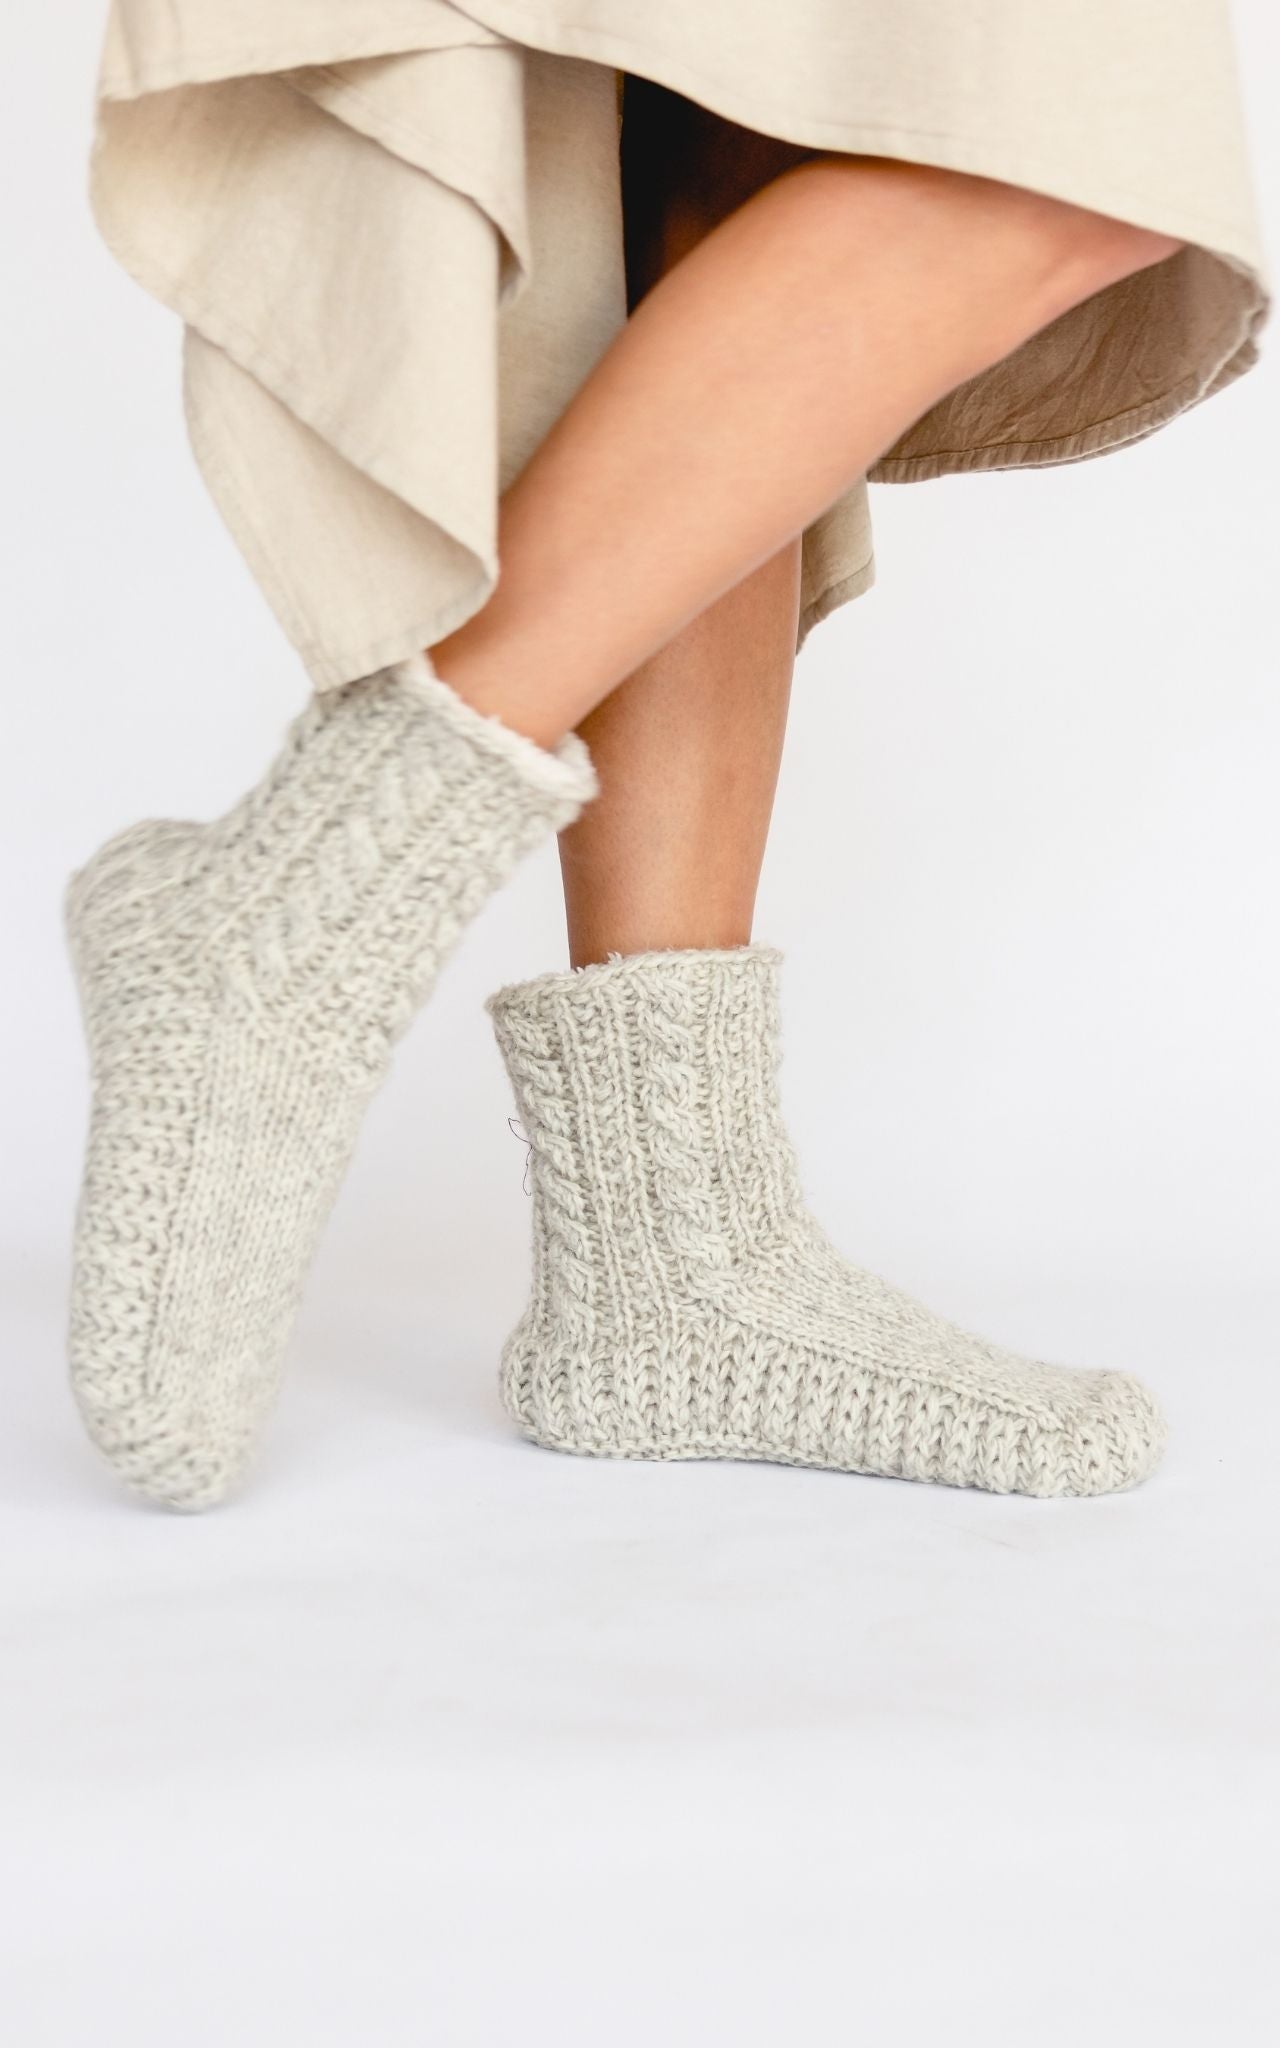 Surya Australia Ethical Merino Wool Socks made in Nepal - Oatmeal